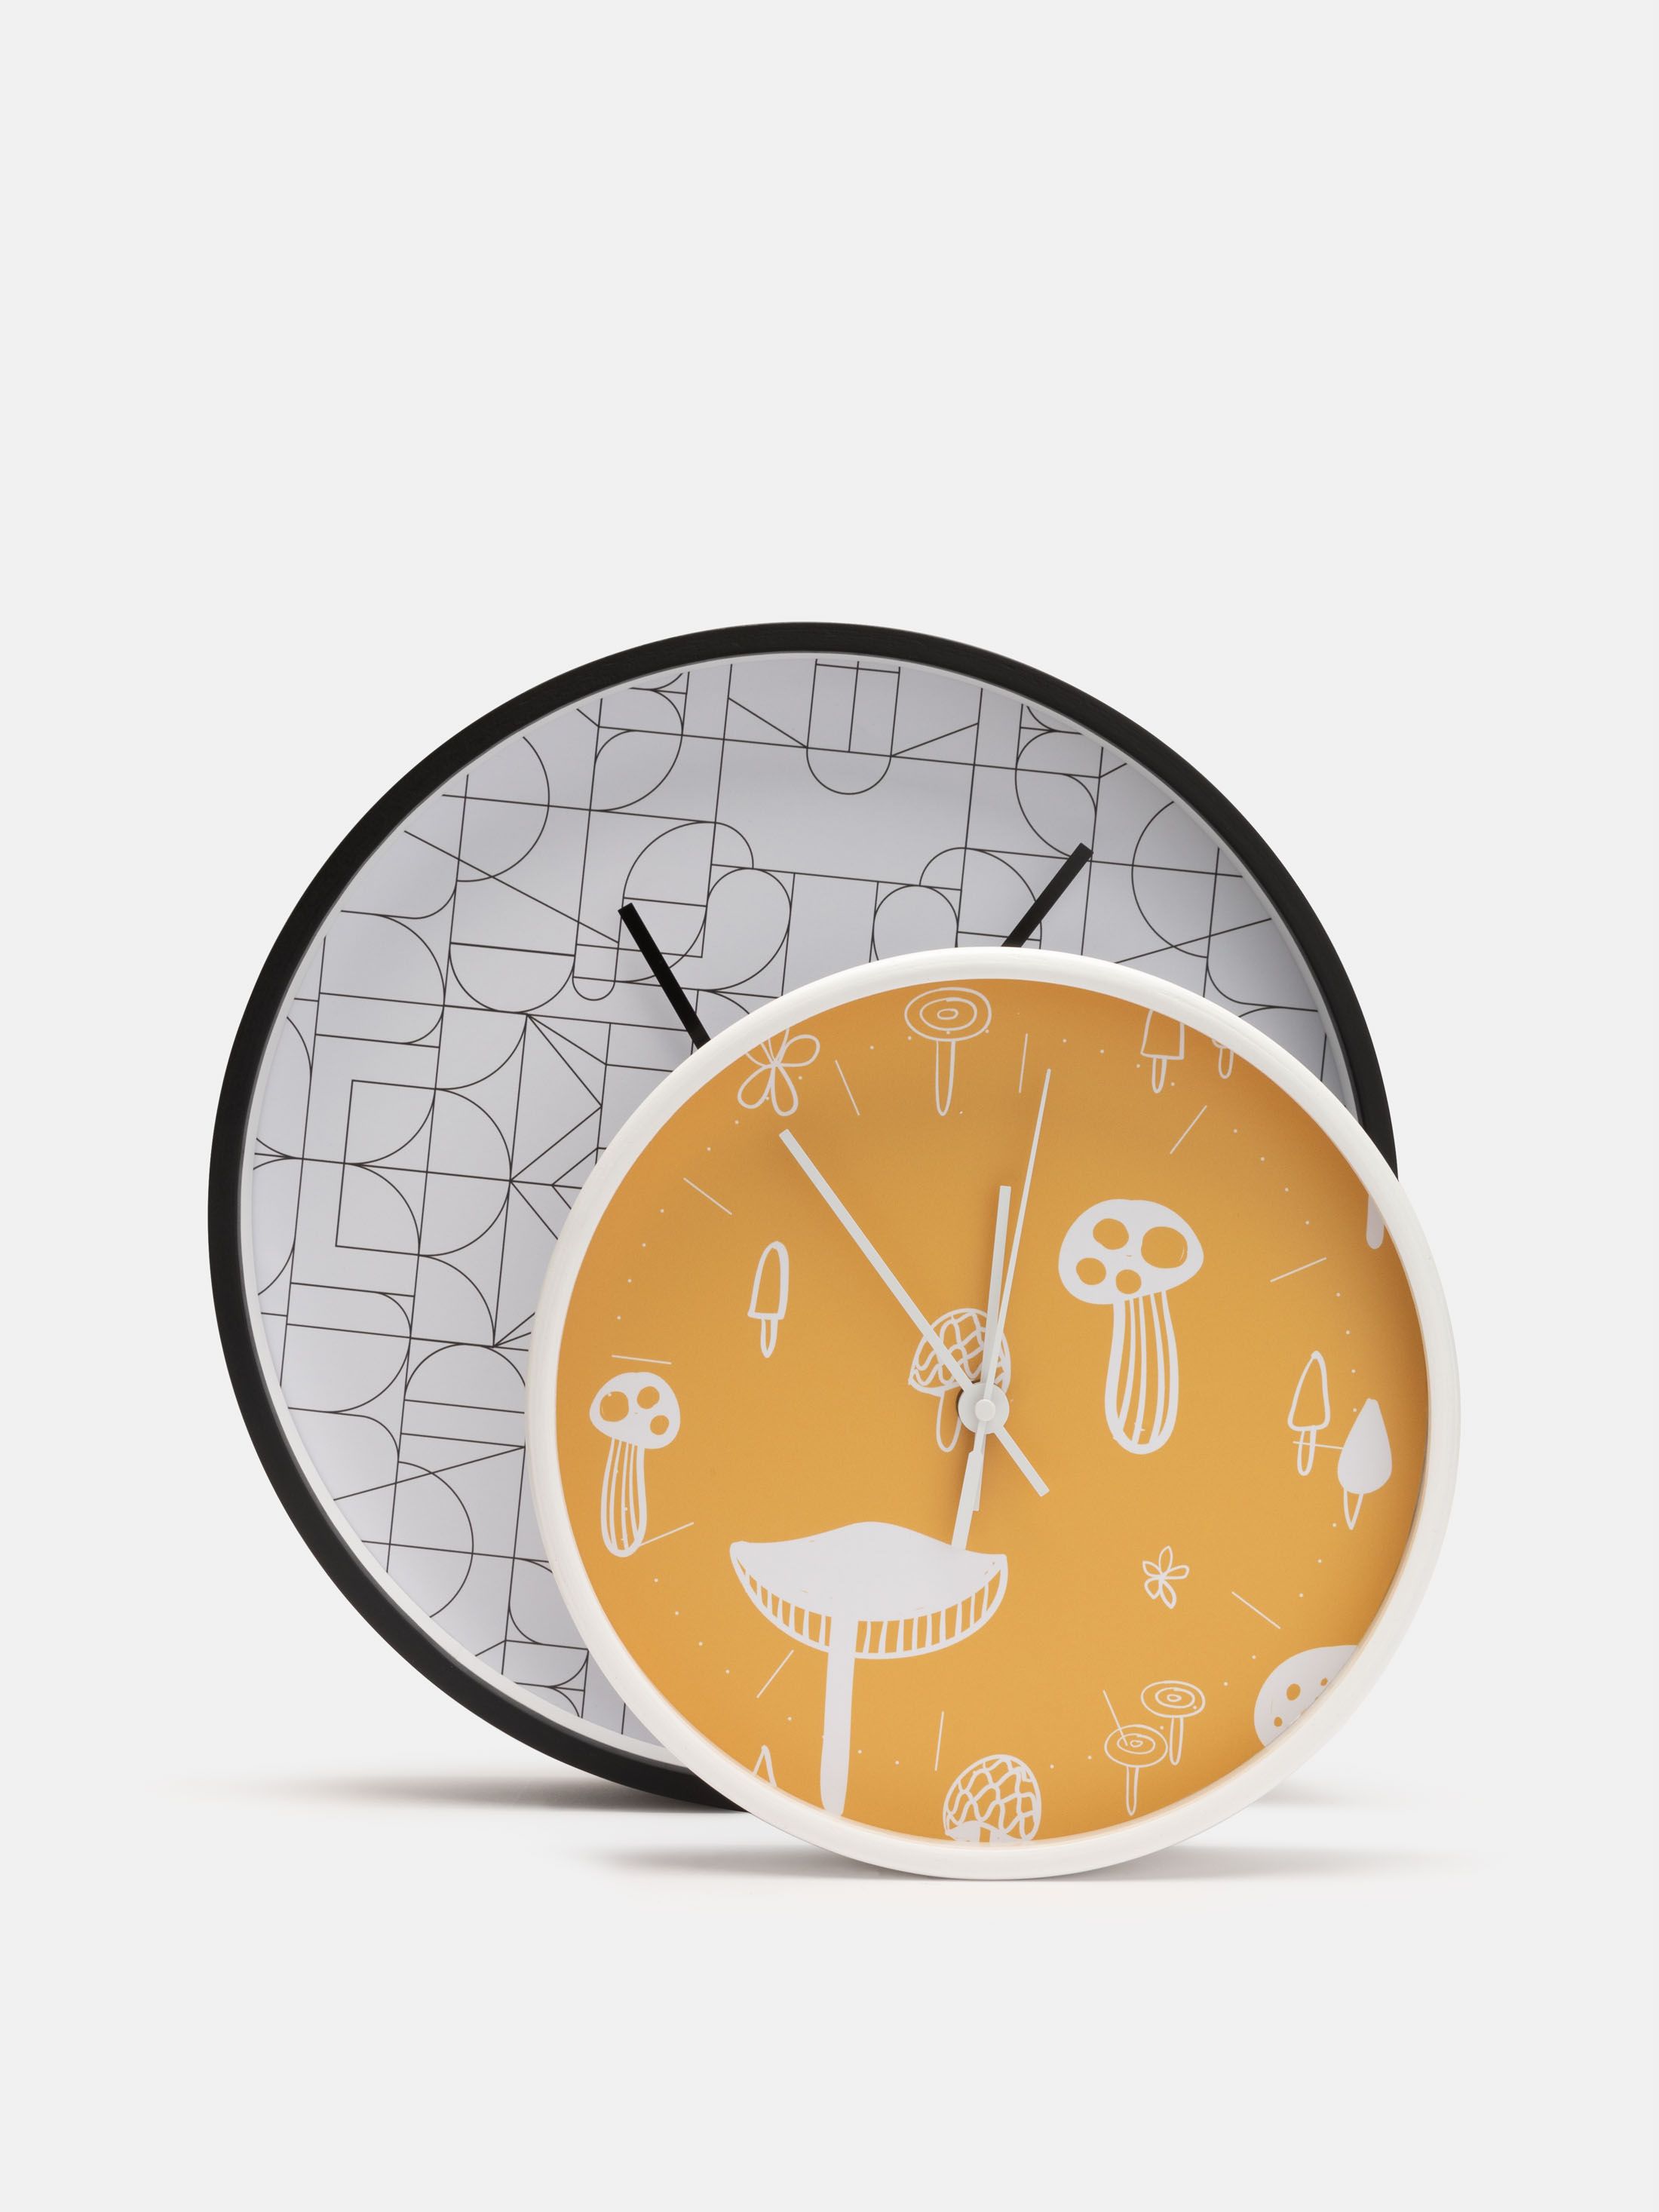 Horloge murale ronde, horloge murale originale avec design